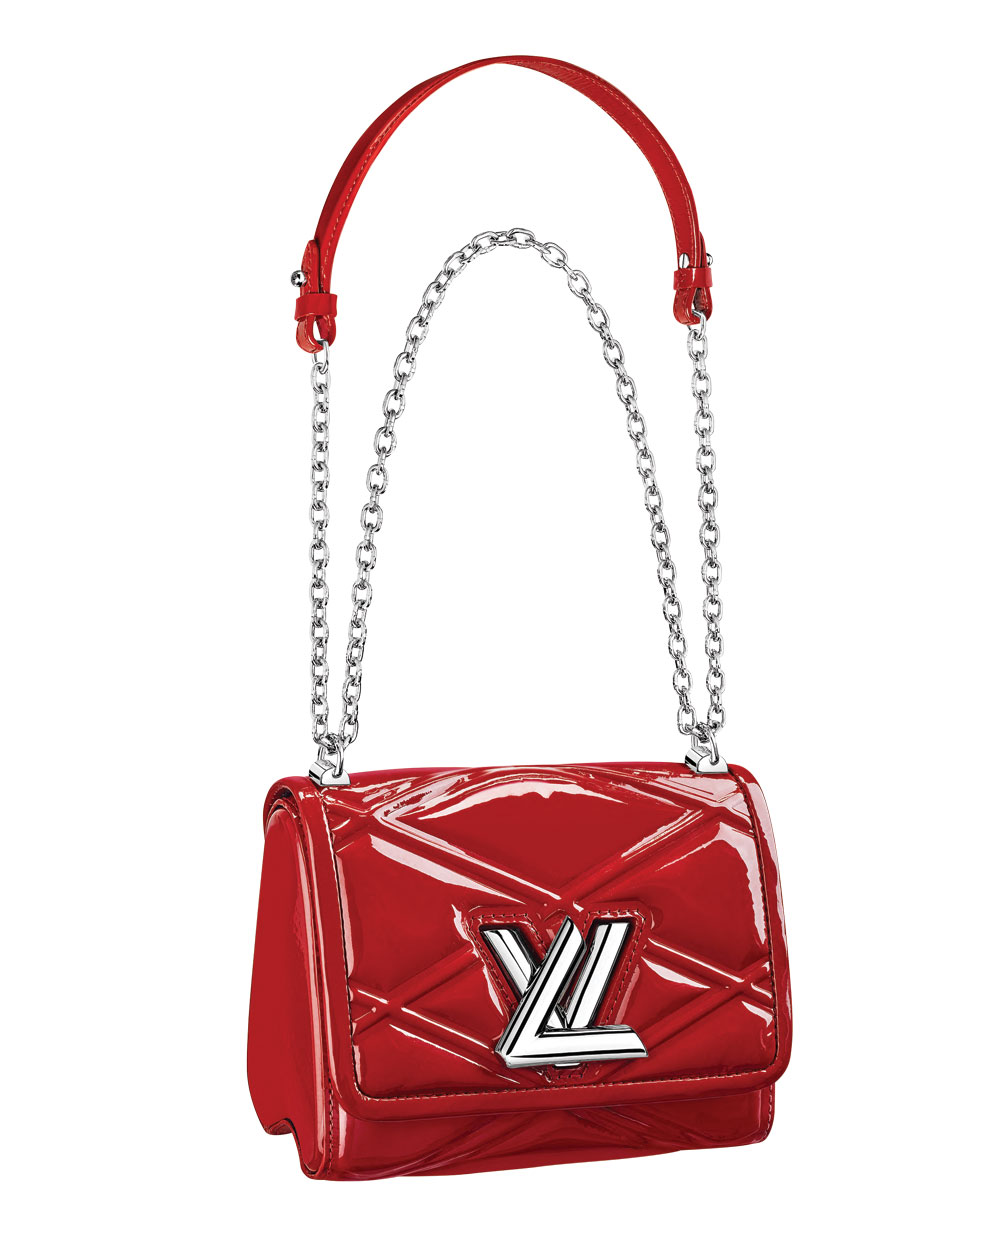 Louis Vuitton bag, $5500